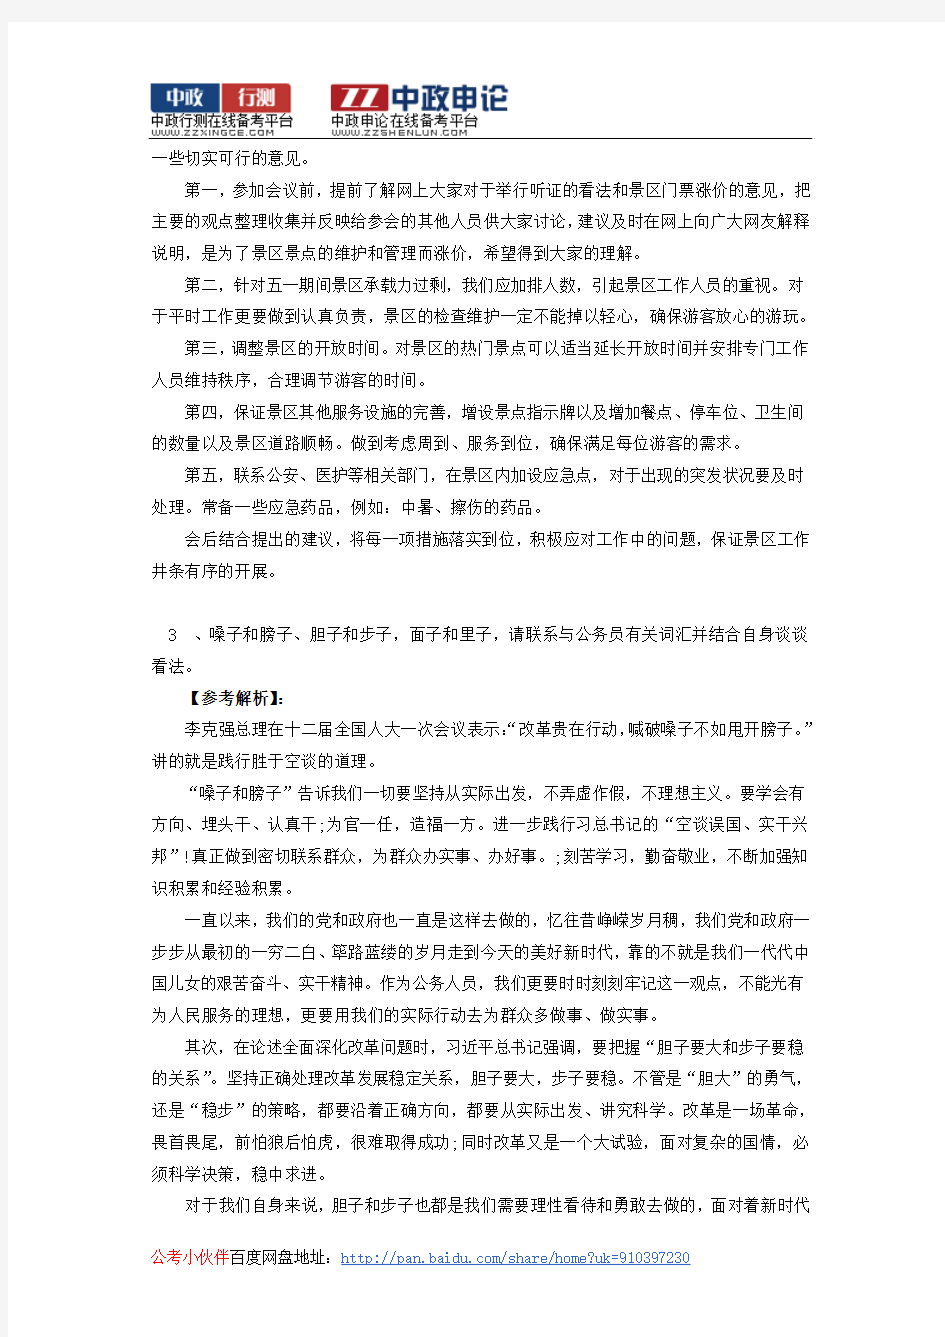 2014年江苏公务员考试面试真题及答案解析(1)